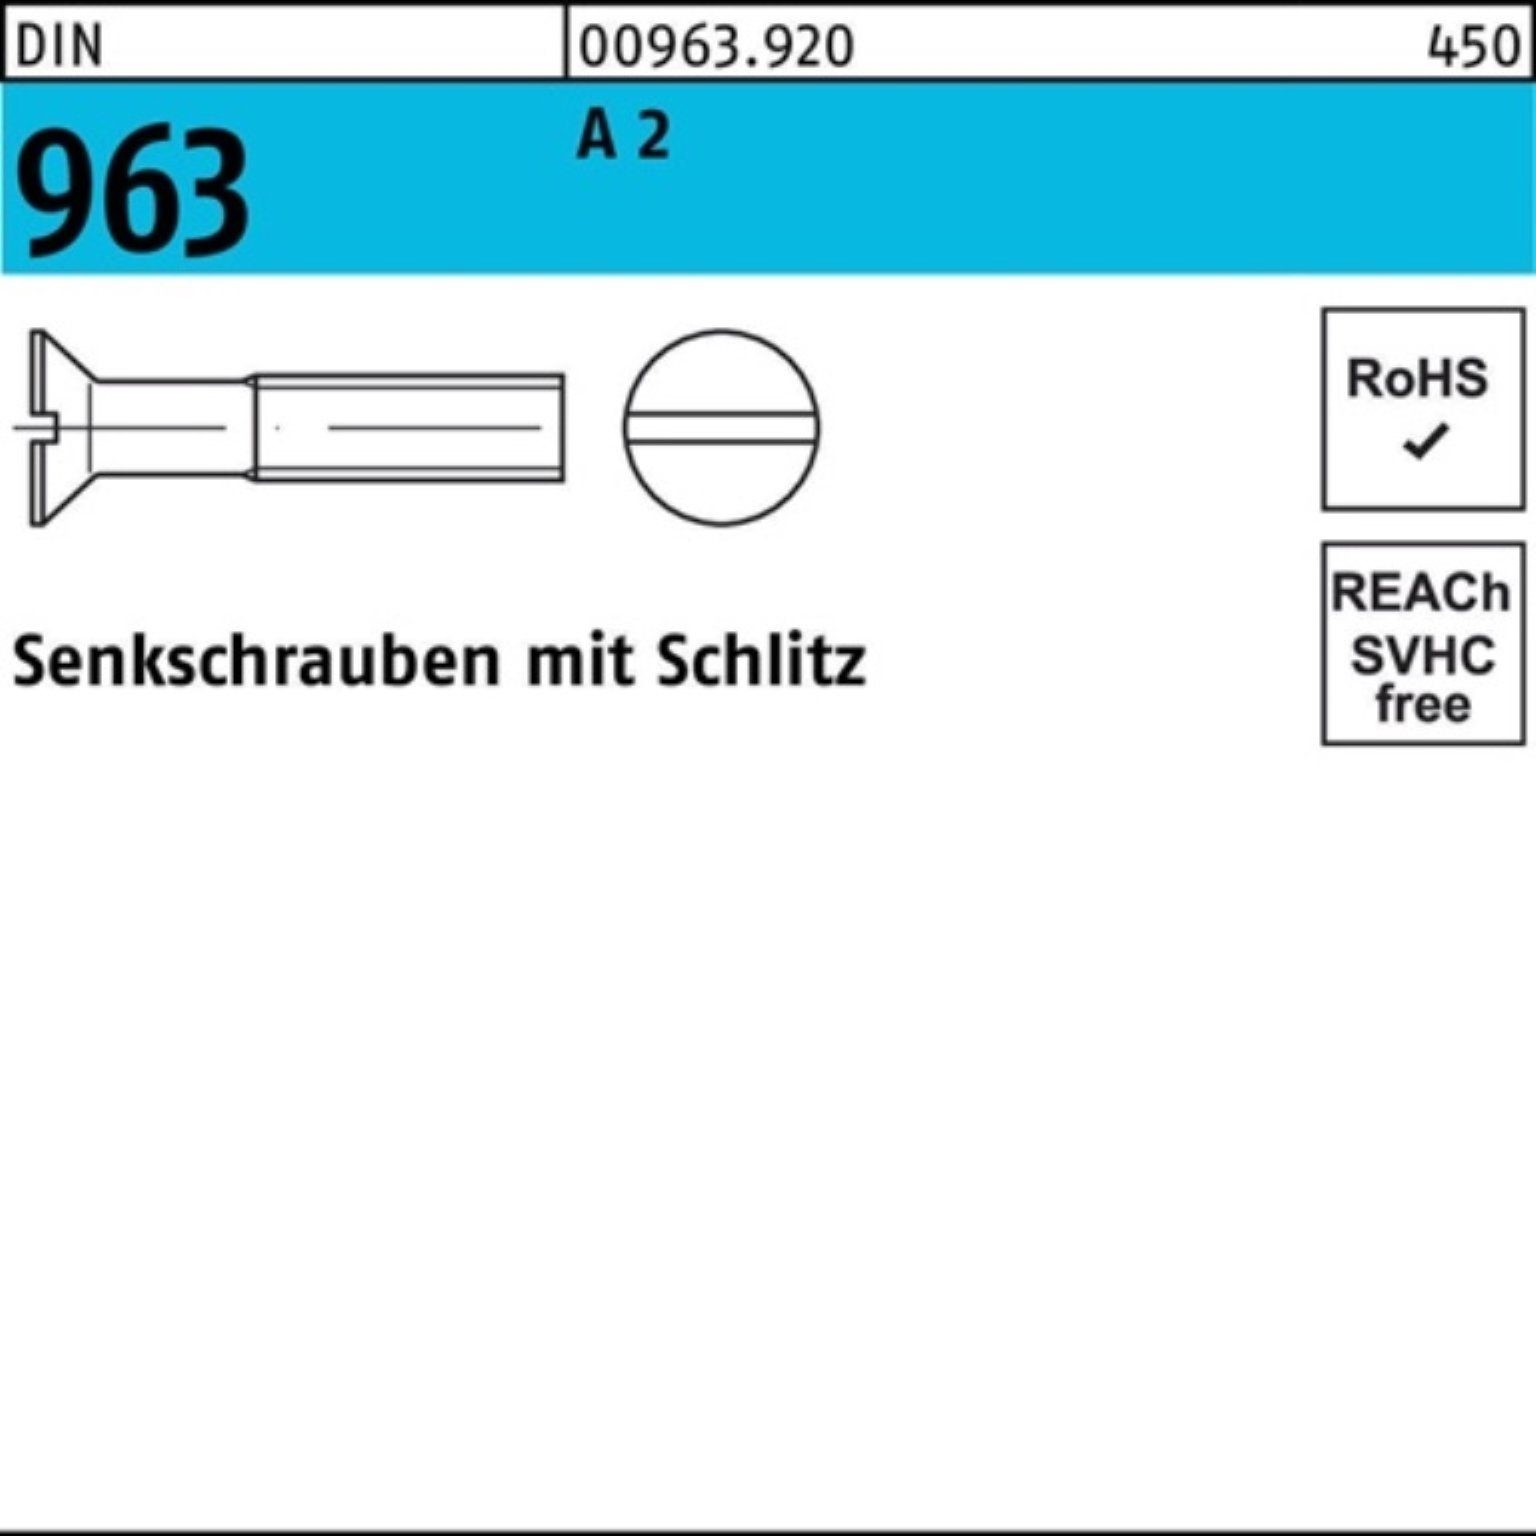 Reyher Senkschraube 200er Pack M6x 12 Stück 963 Senkschraube 200 DIN Schlitz A 2 963 DIN